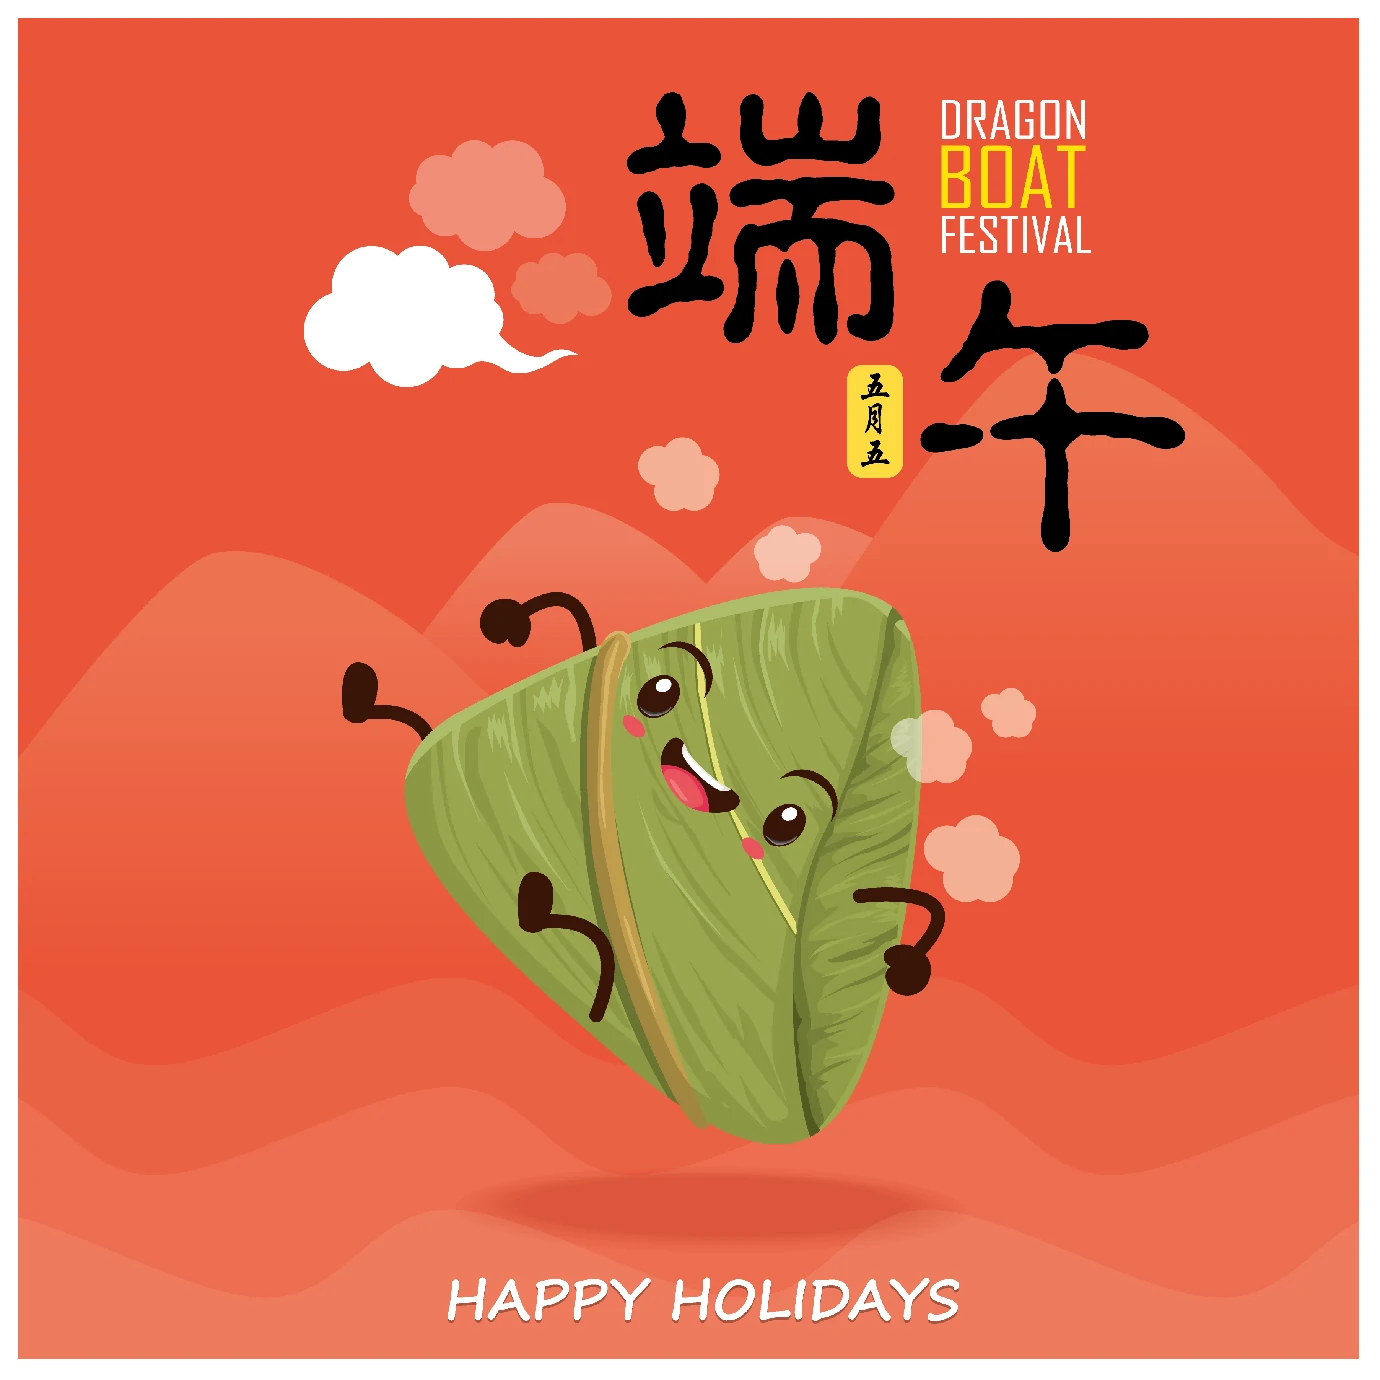 中国传统节日卡通手绘端午节赛龙舟粽子插画海报AI矢量设计素材【012】